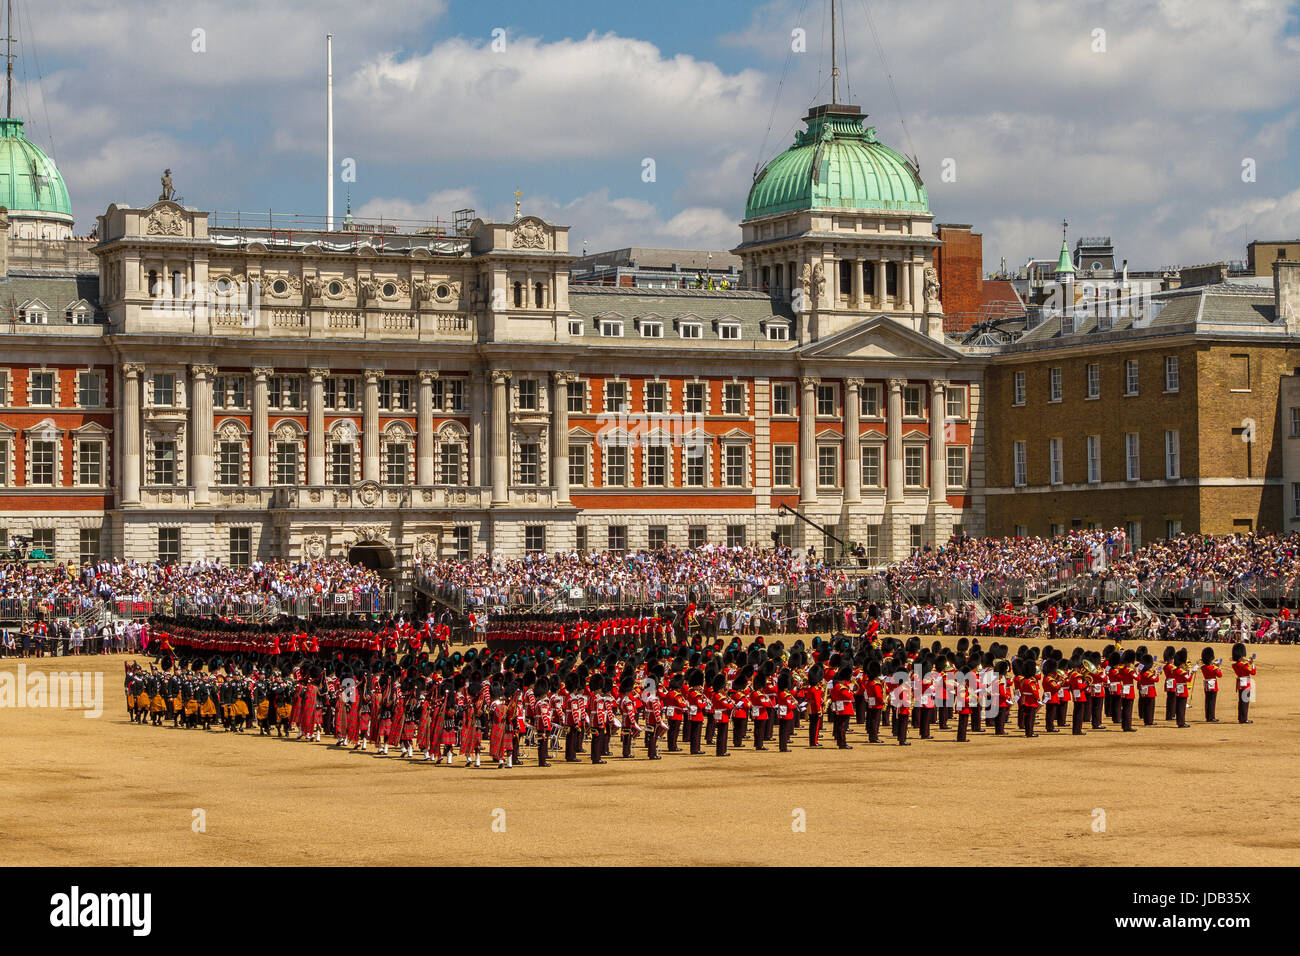 Soldaten und die massierten Bands stehen in Formation bei der Trooping the Color Ceremony auf der Horse Guards Parade, London, Großbritannien, 2017 Stockfoto